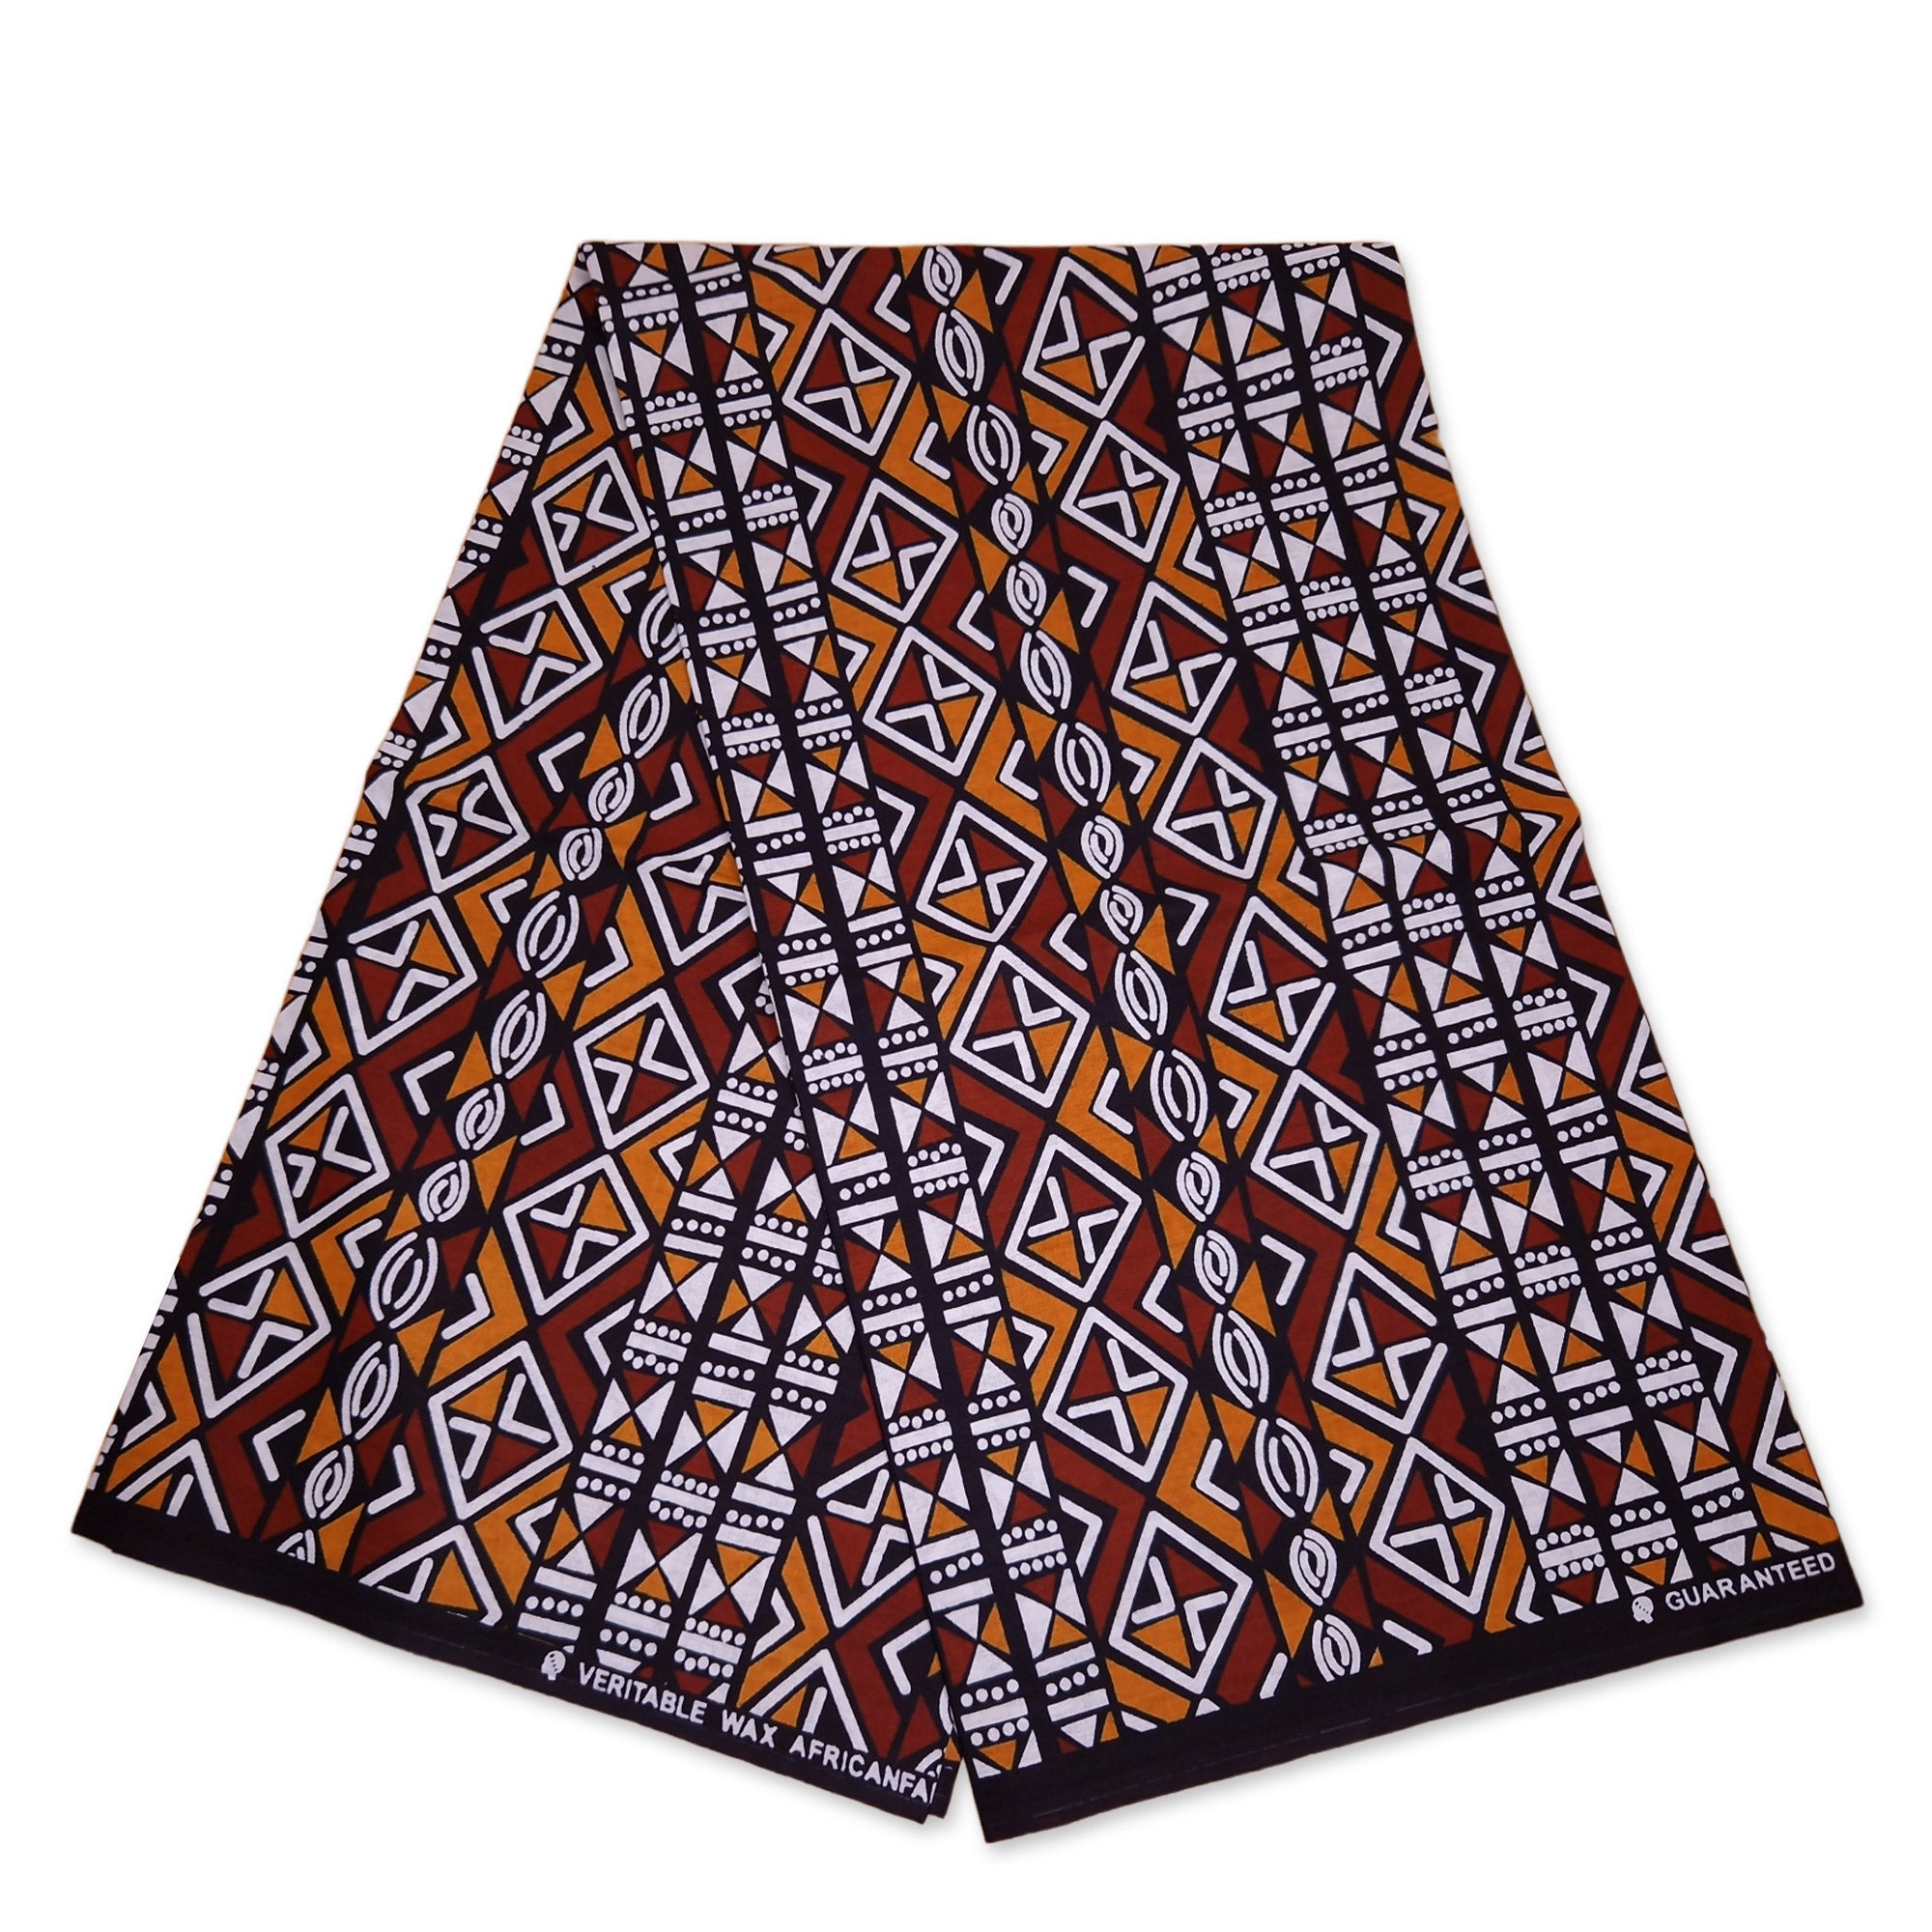 Afrikanischer Print Stoff - Kastanienbraun / Orange Bogolan / Mud cloth